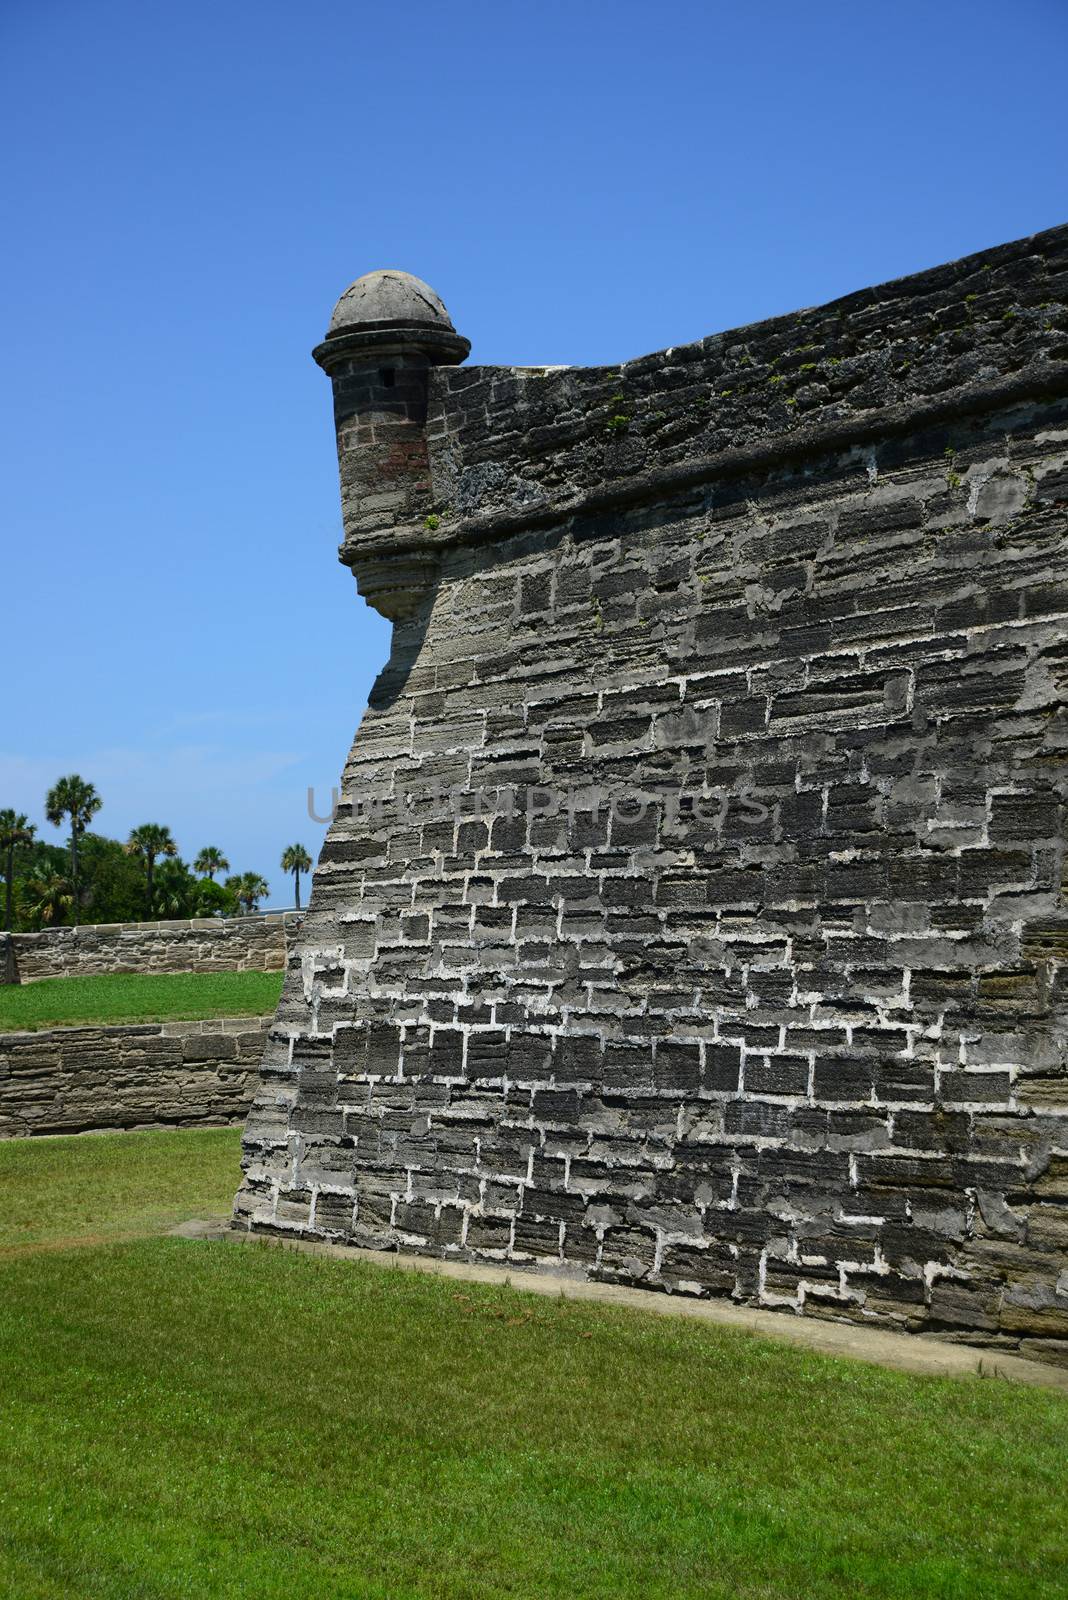 historical Castillo de San Marcos fort built in 1600s